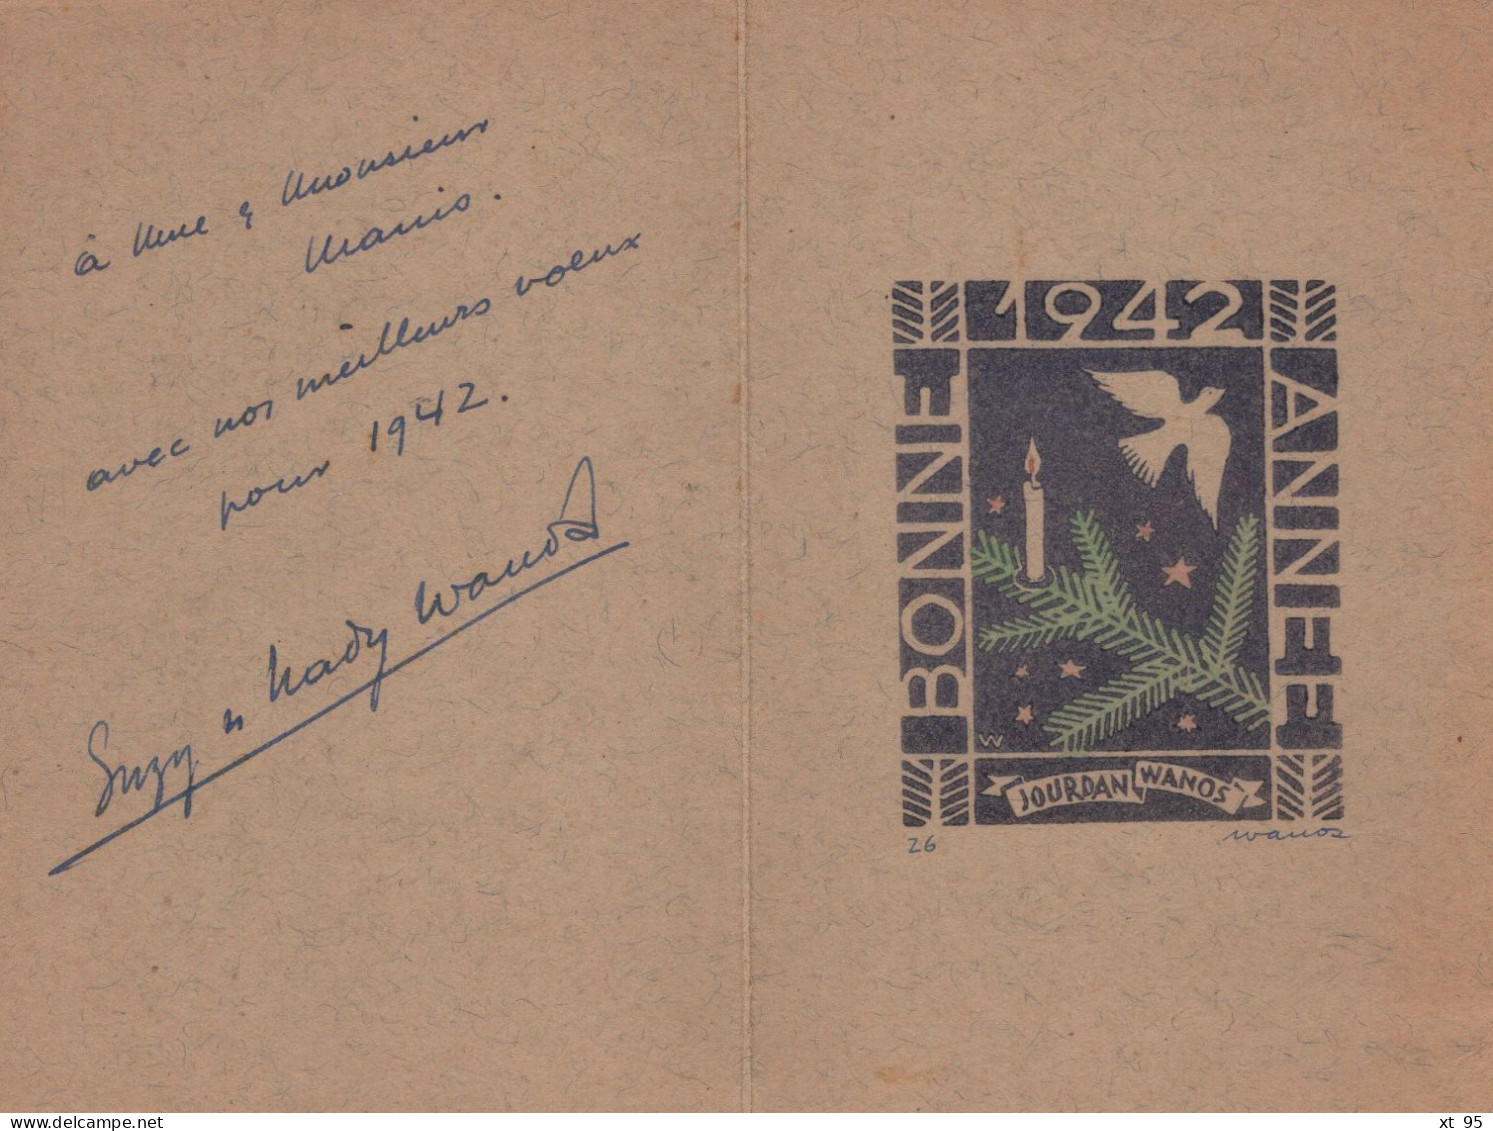 Lot De 5 Cartes De Bonne Annee Avec Lithographies - Signees Leonard Wanos (philateliste Journaliste) 1941 à 1949 - Lithographien